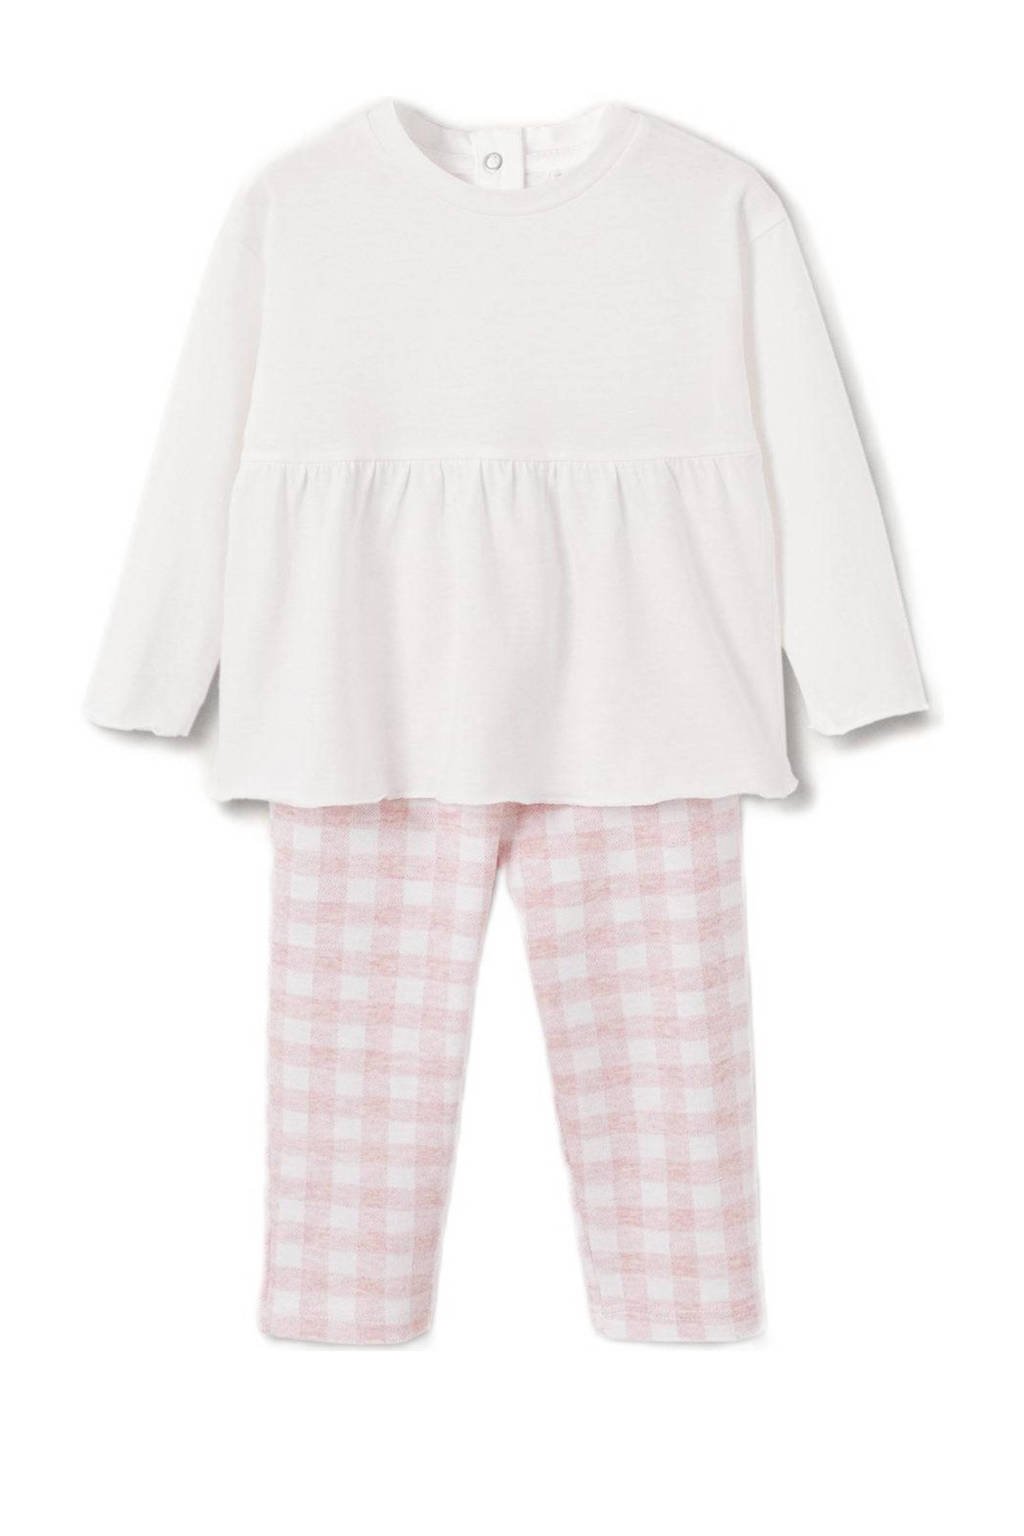 Mango Kids geruite pyjama roze/wit, Roze/wit